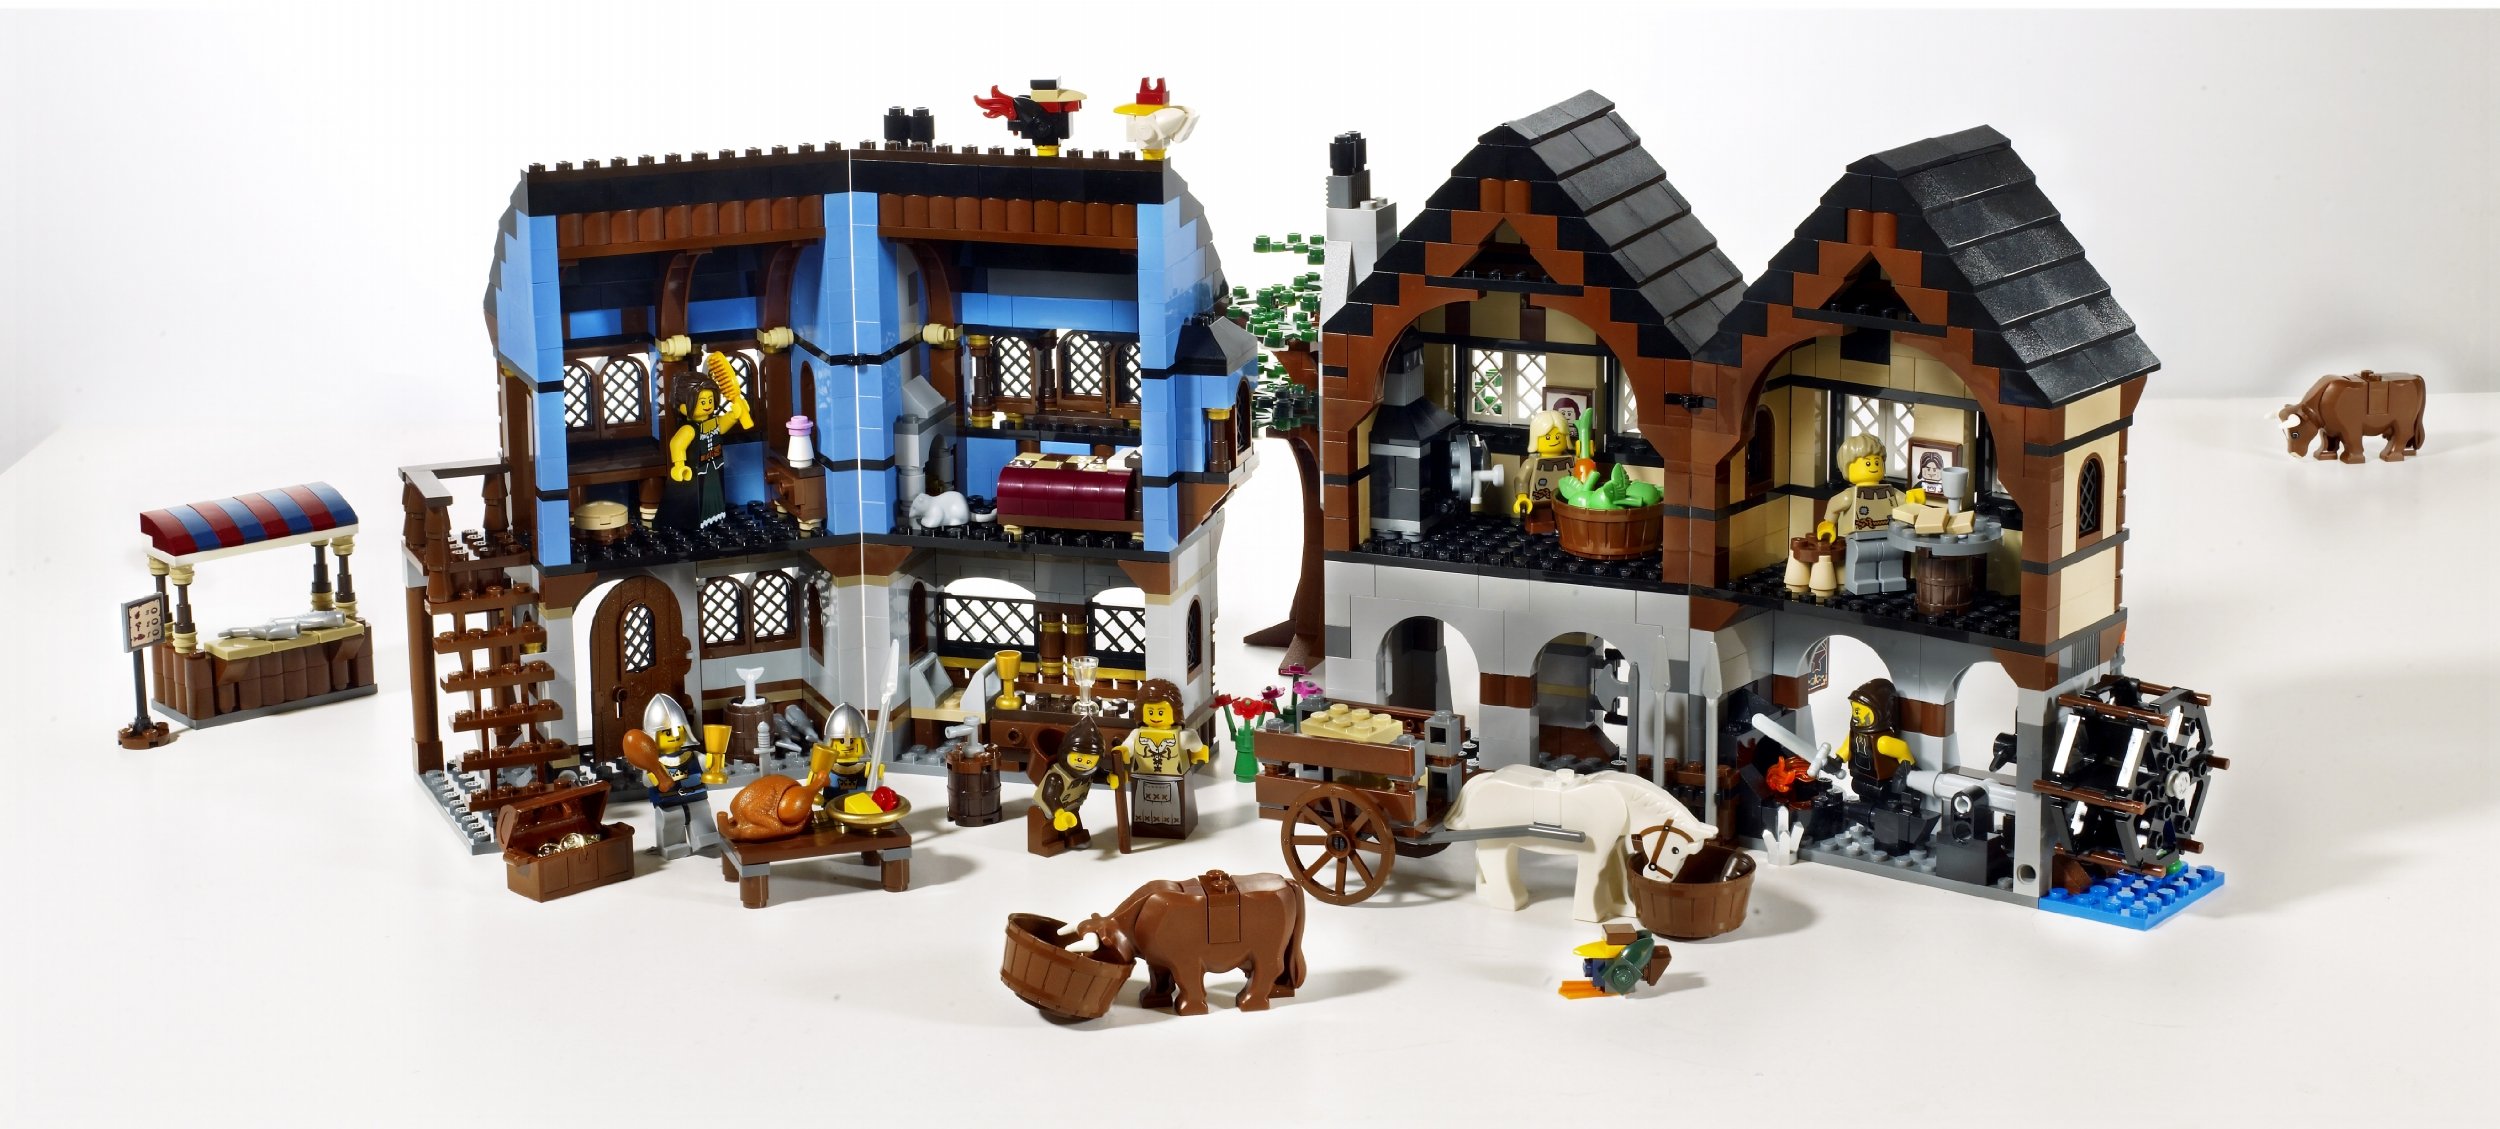 LEGO Castle Medieval Market Village (10193) - image 4 of 4